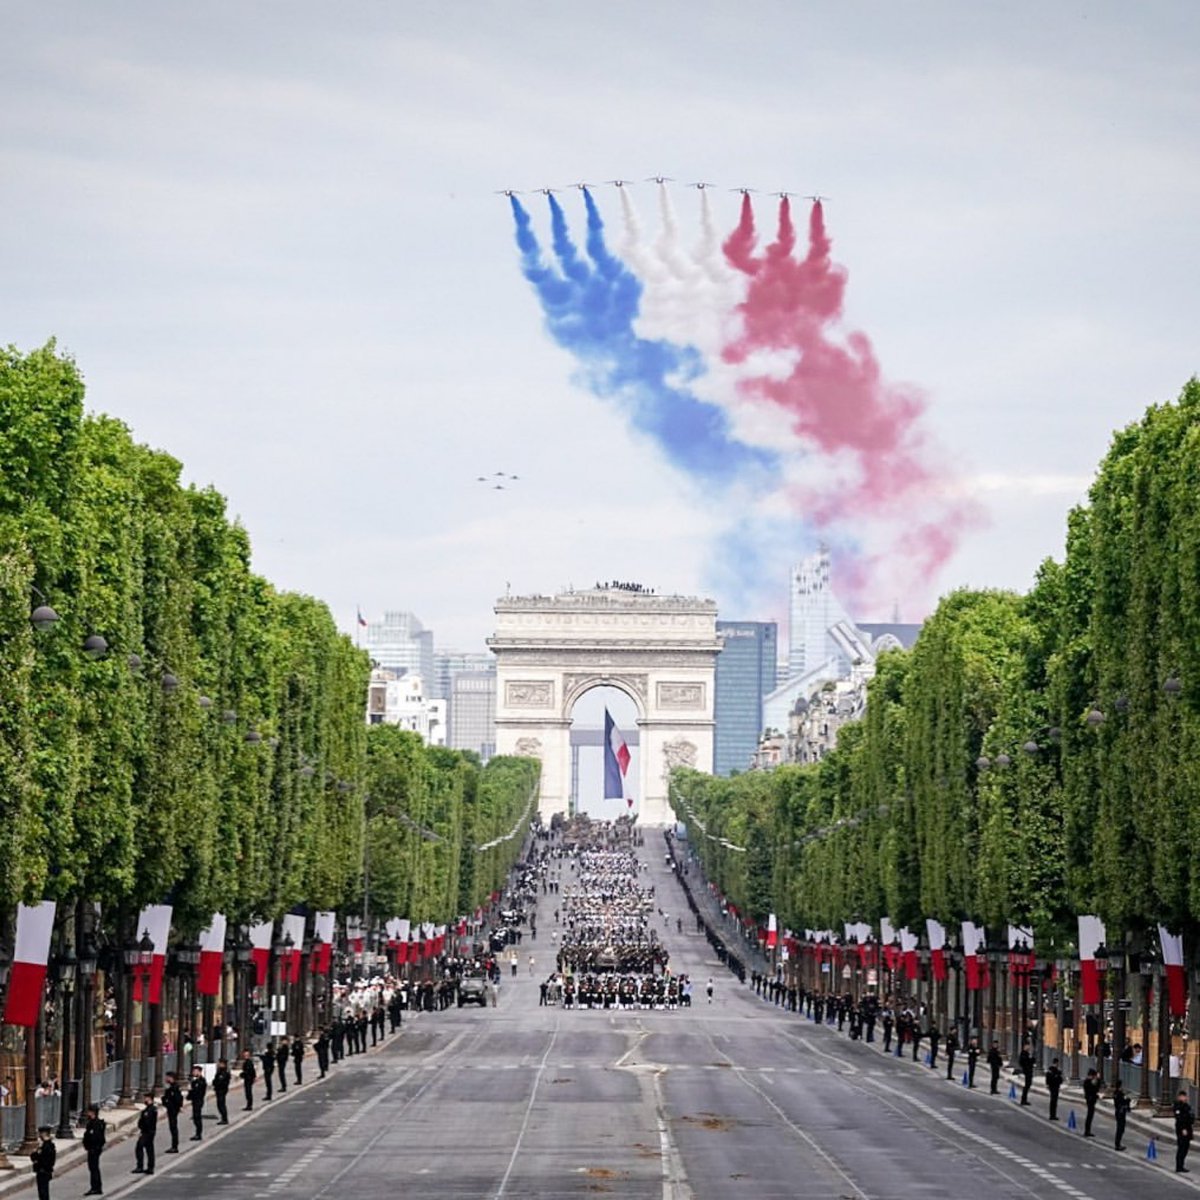 Hoy 14 de julio se celebra el Día Nacional de #Francia 🇫🇷, un día que conmemora la toma de la Bastilla, prisión y símbolo del monarquismo. 

📰 Un día que inició con la #RevoluciónFrancesa en el que el pueblo francés derrocó al sistema monarca y estableció un nuevo modelo de…